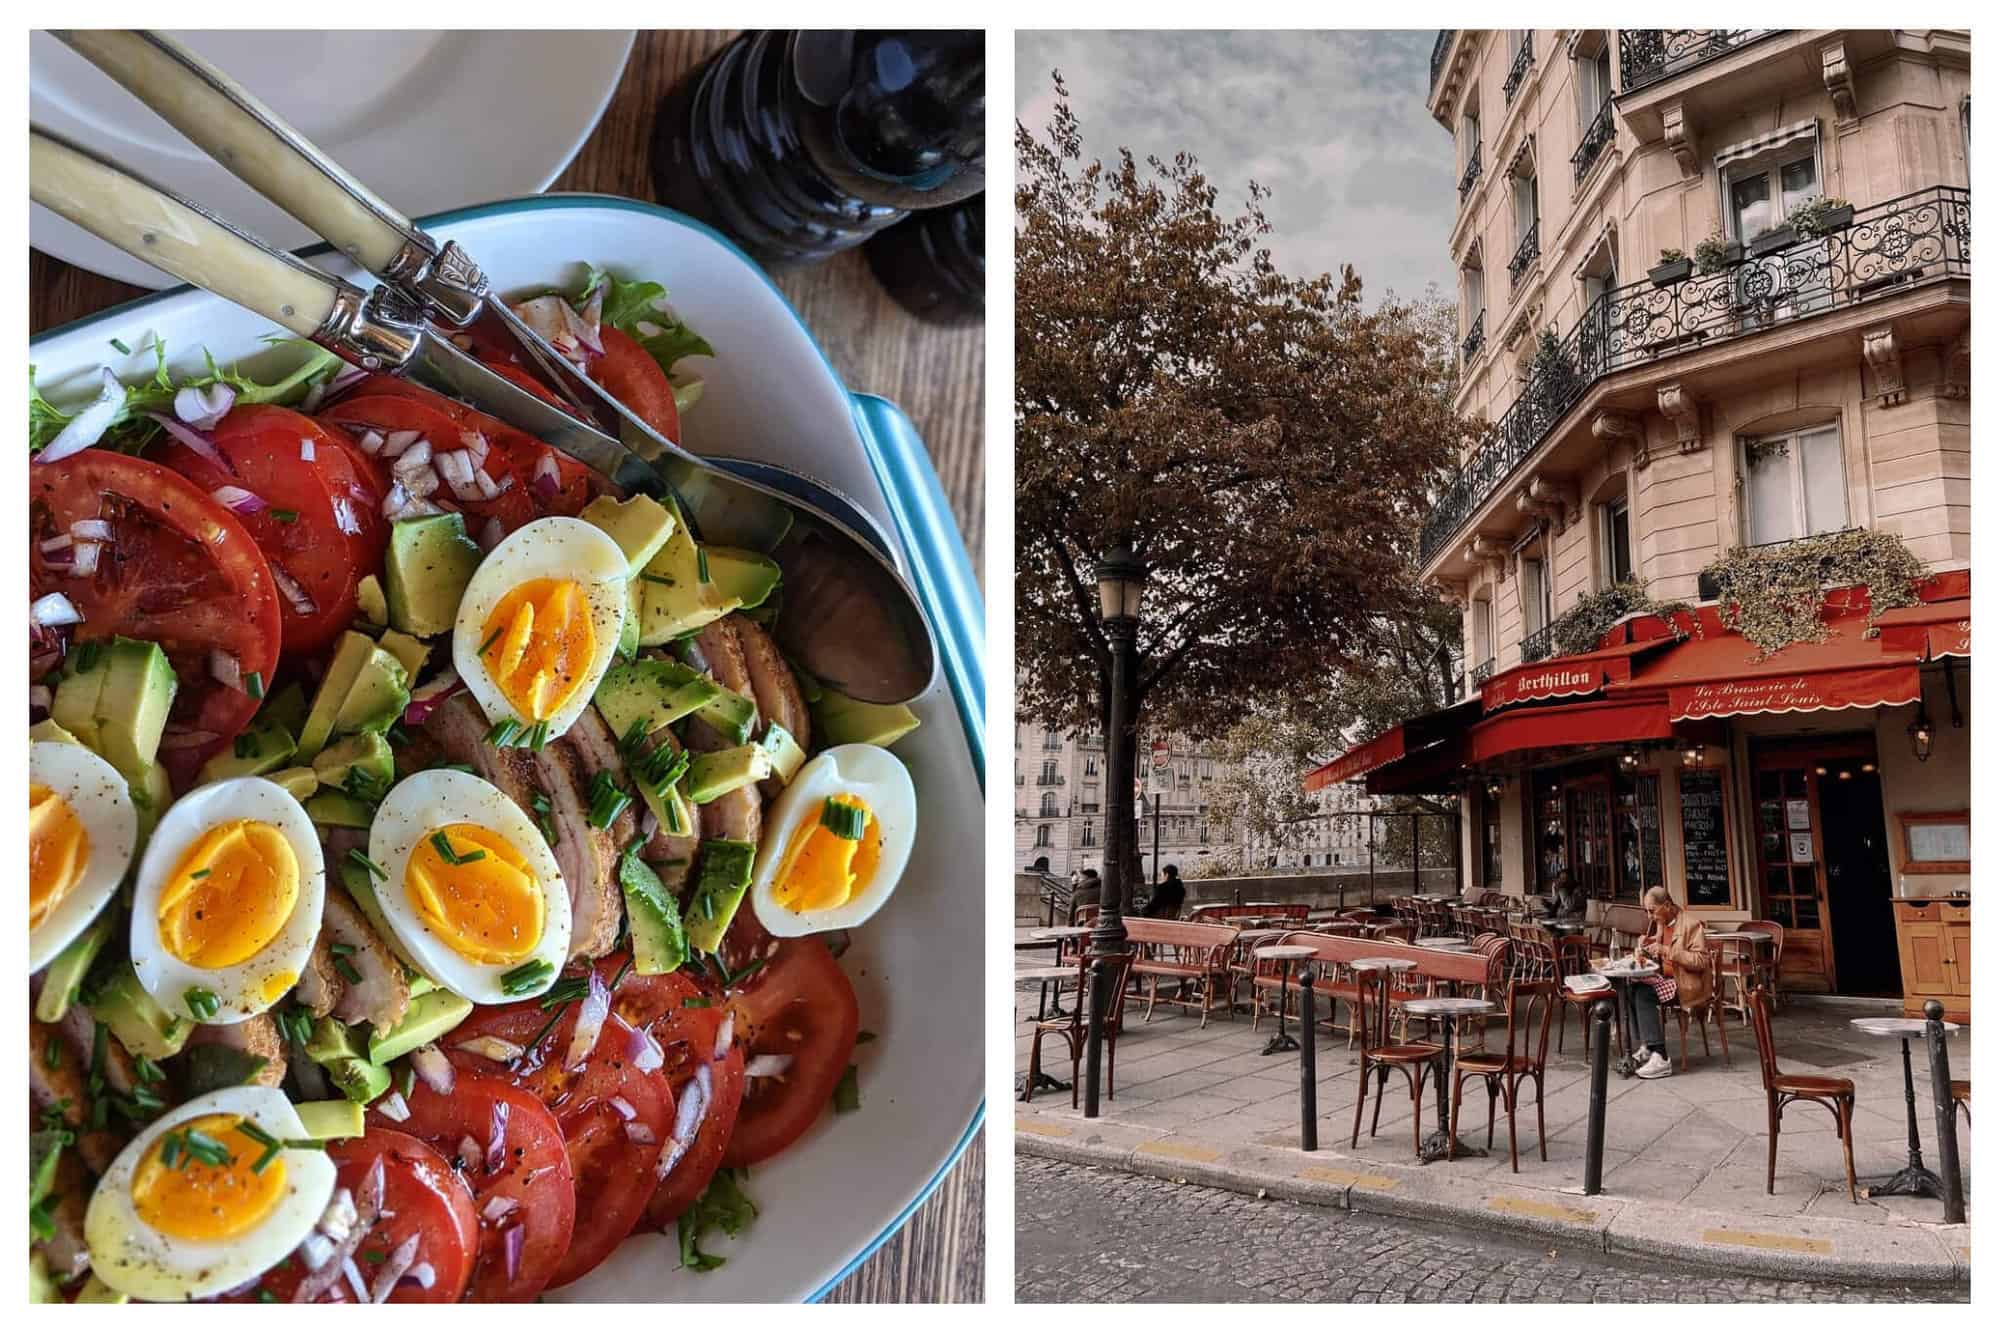 Left: A Parisienne salad. Right: An empty terrace in Paris.